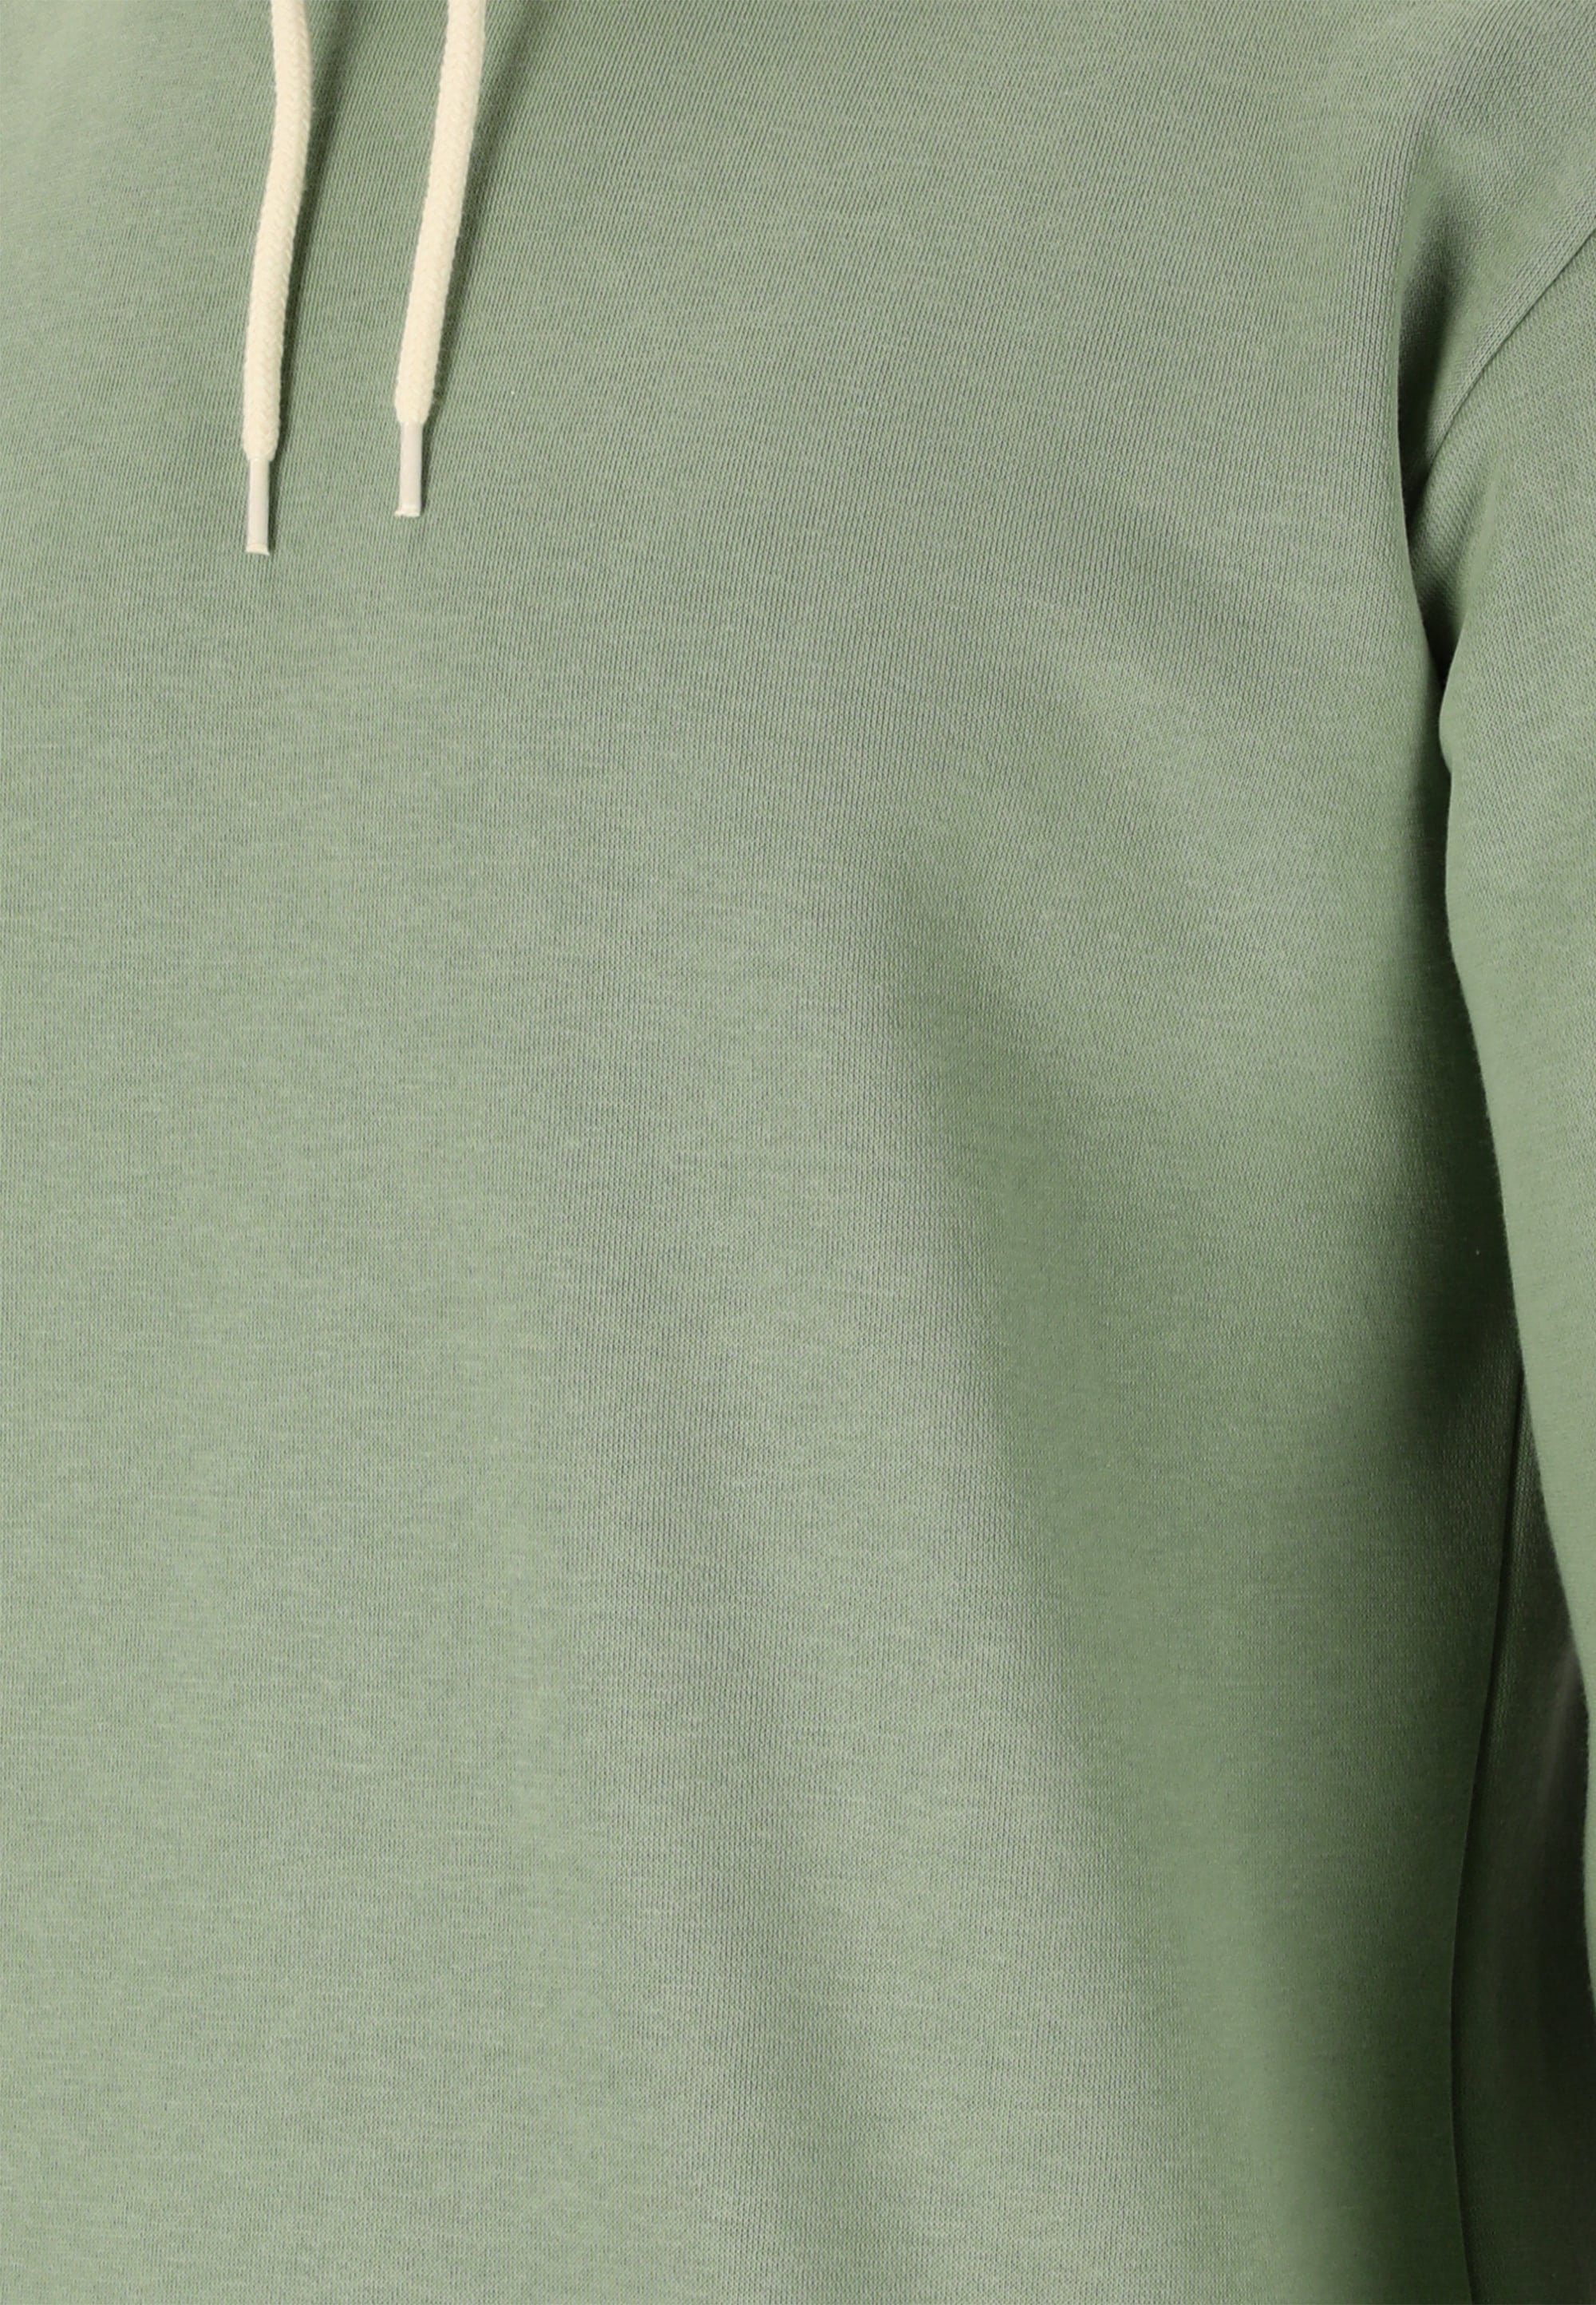 CRUZ Sweatshirt »Penton«, aus weichem und schnell trocknendem Material